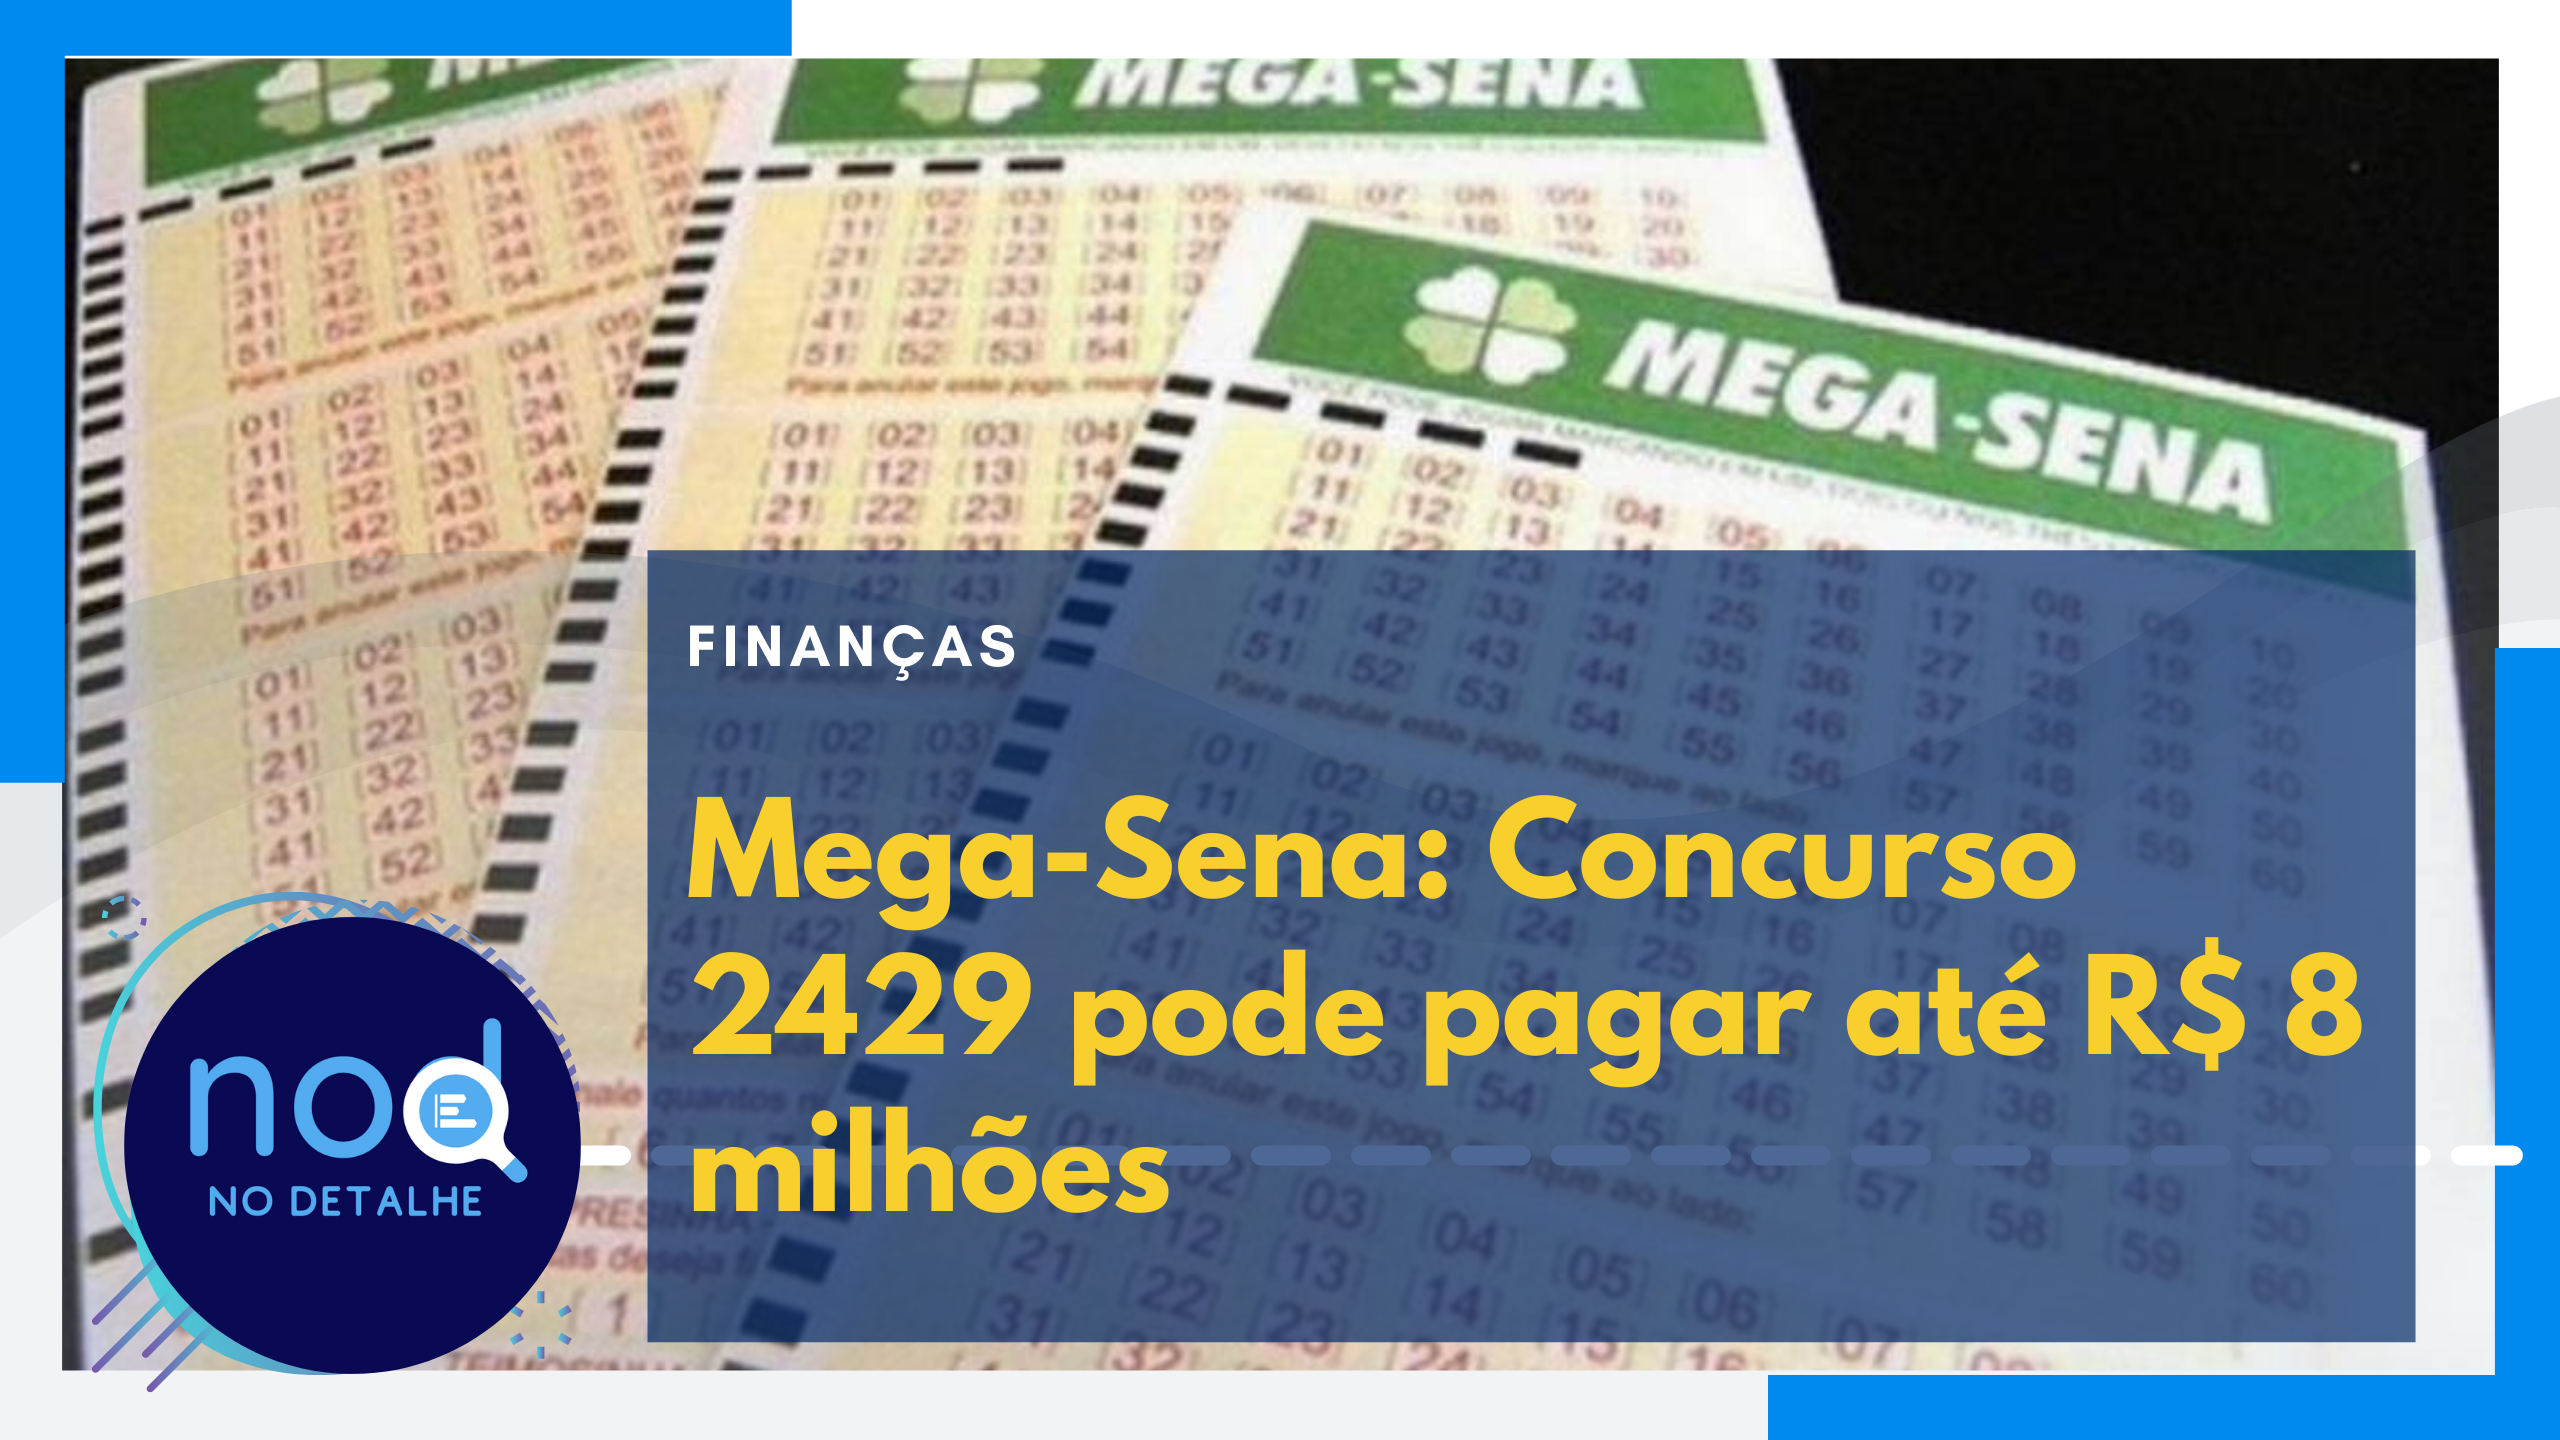 Mega-Sena Concurso 2429 pode pagar até R$ 8 milhões